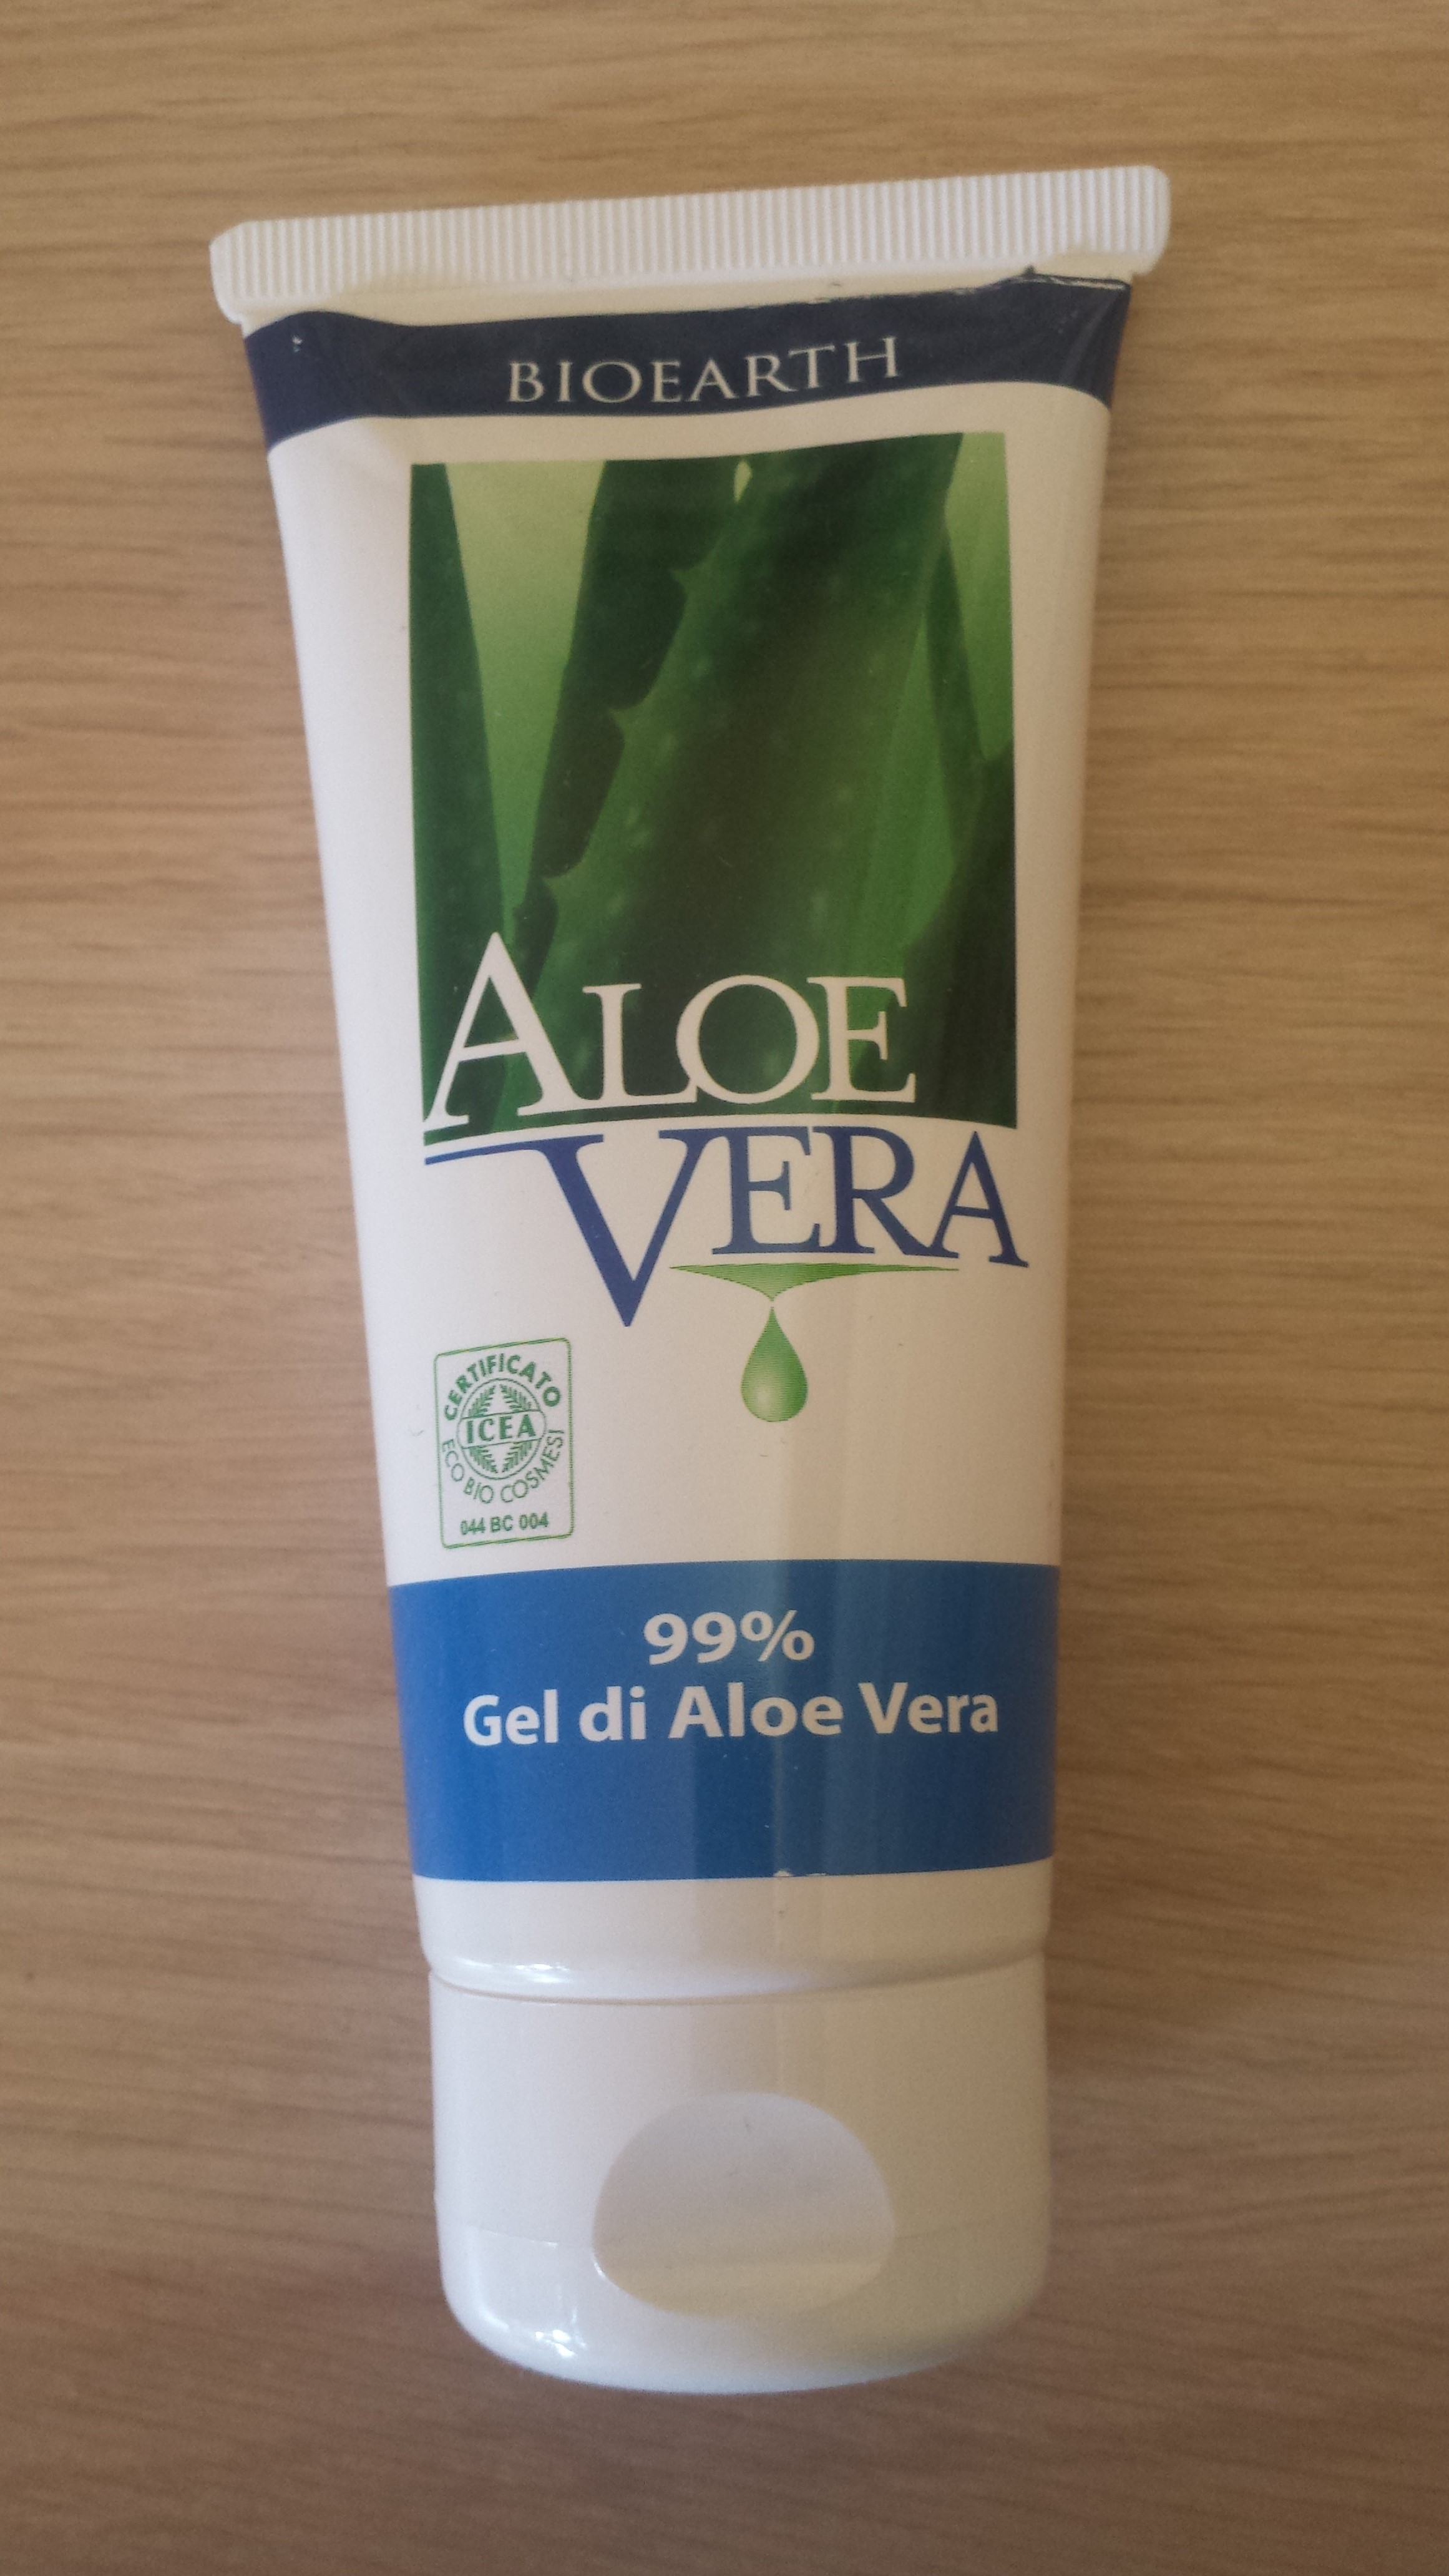 bioearth aloe gel